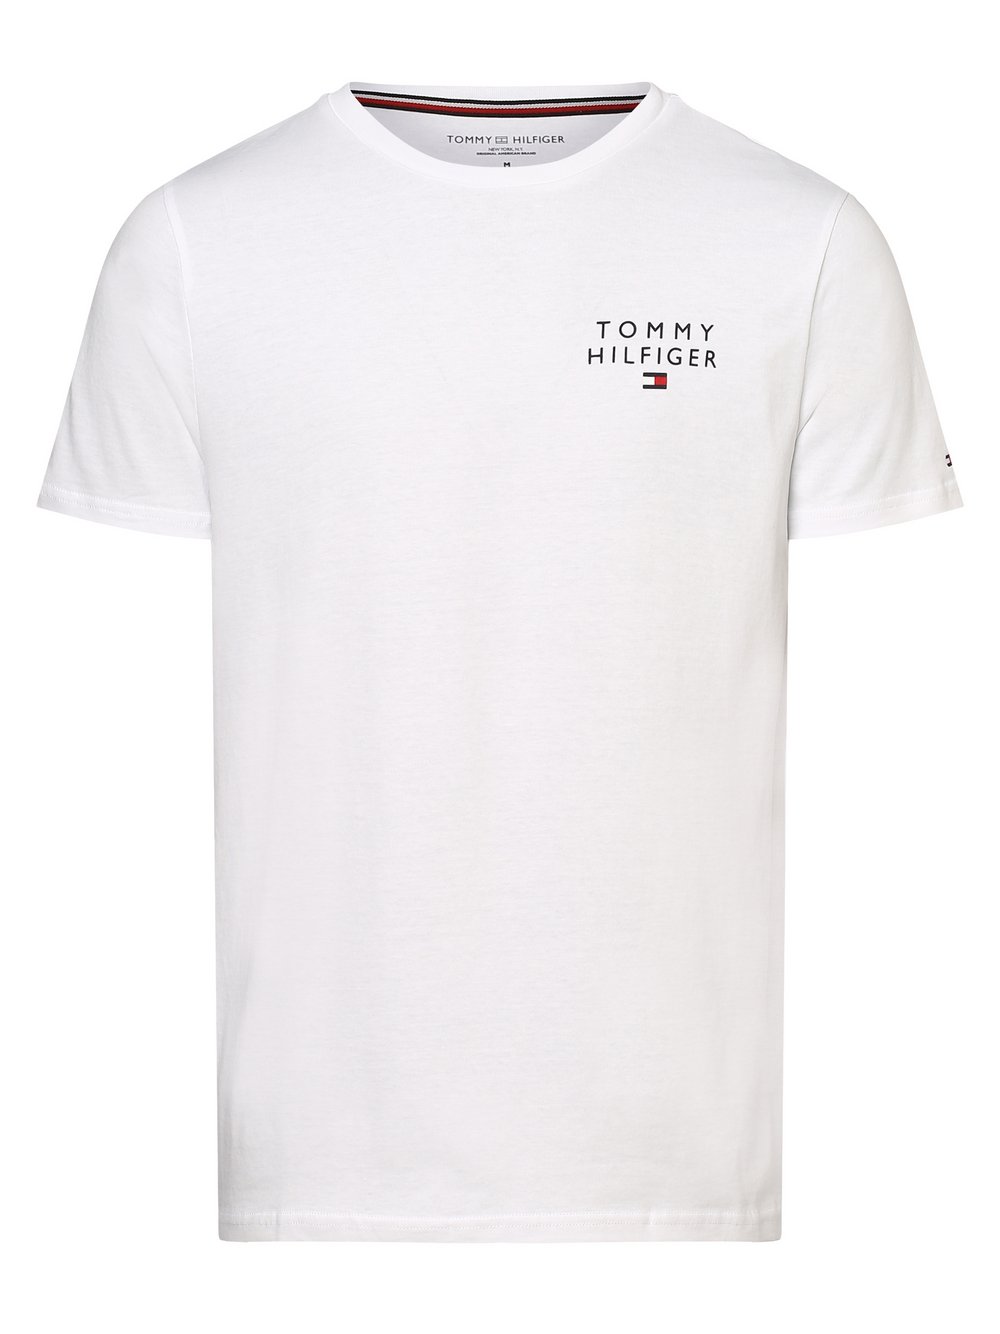 Tommy Hilfiger - Męska koszulka od piżamy, biały